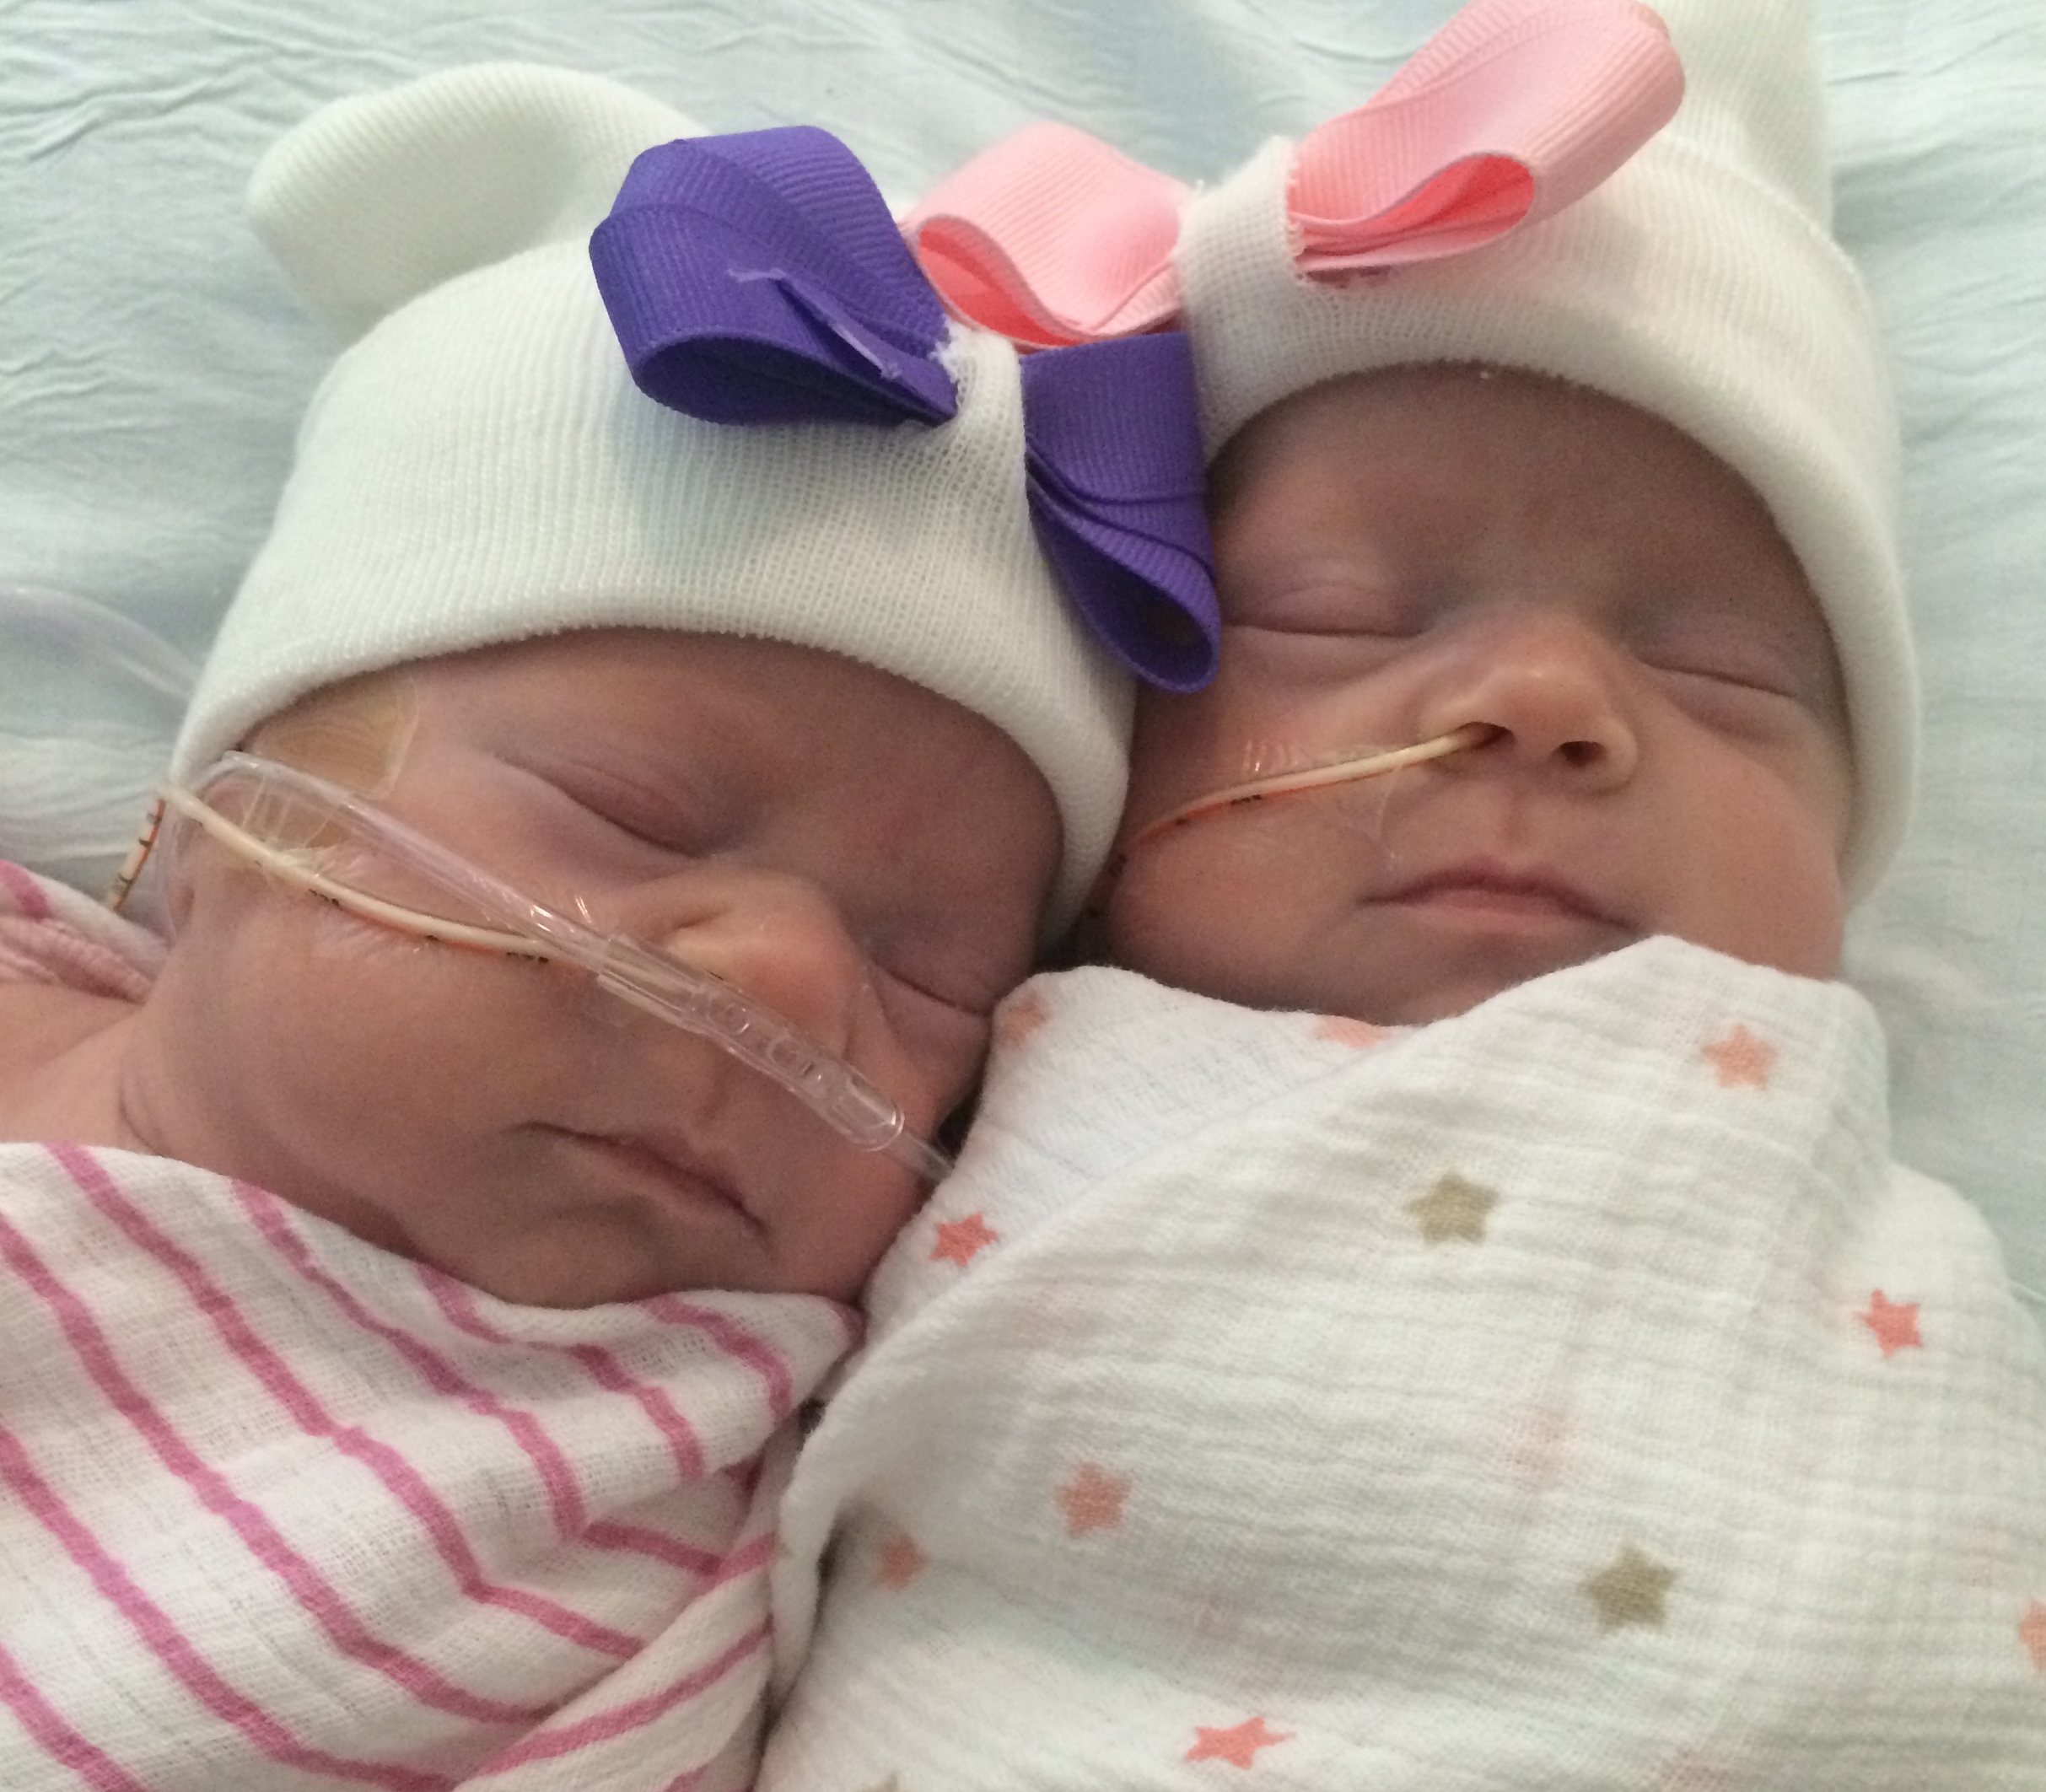 neonatal intensive care unit triplets